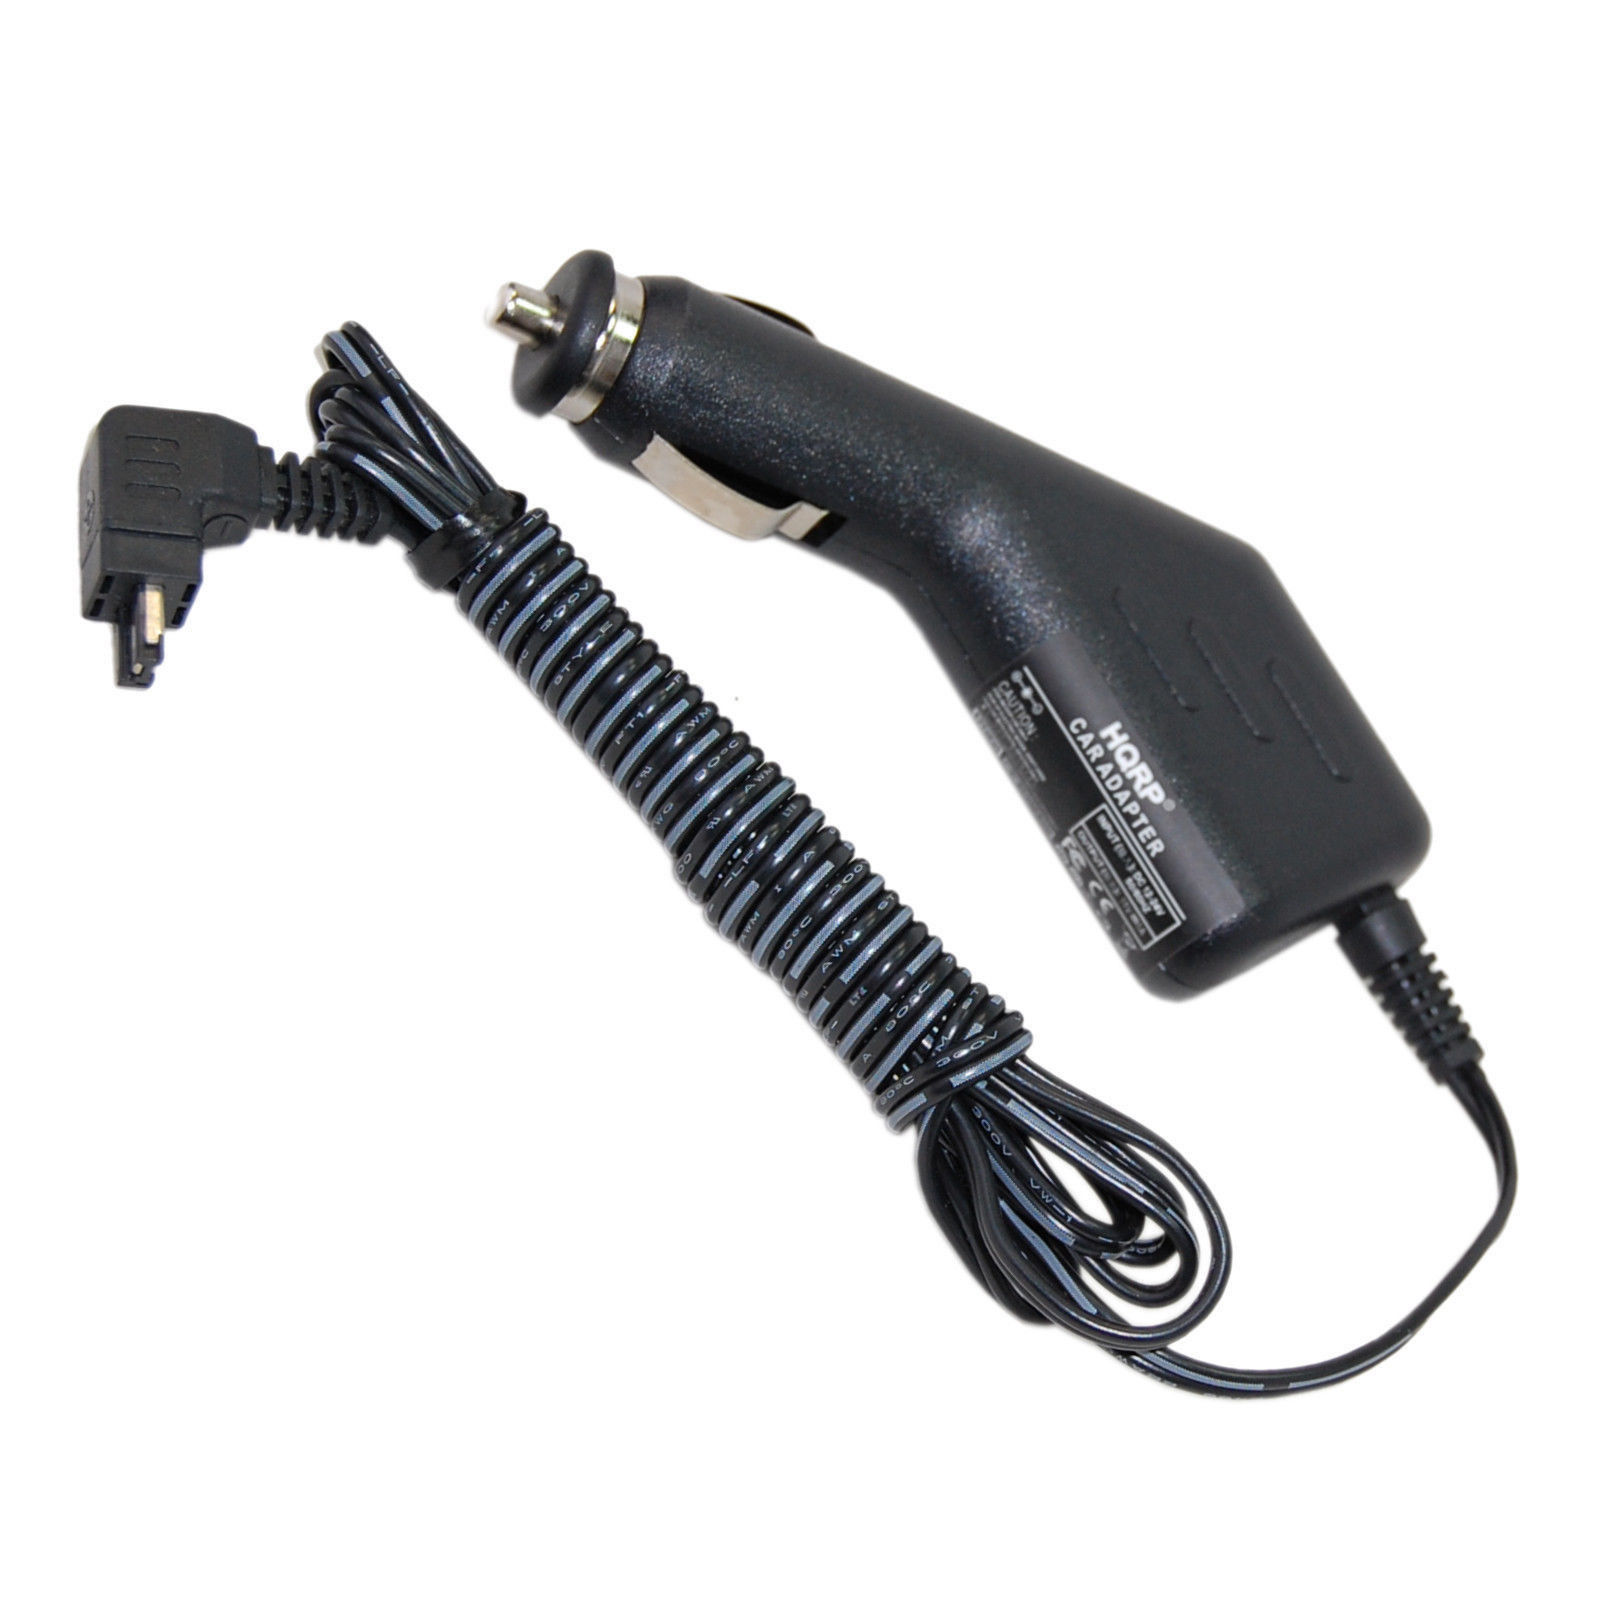 HQRP Car Charger Adapter Cigarette Lighter for JVC GR-SXM38US GR-SXM50 GR-X5 GR-X5U Camcorder